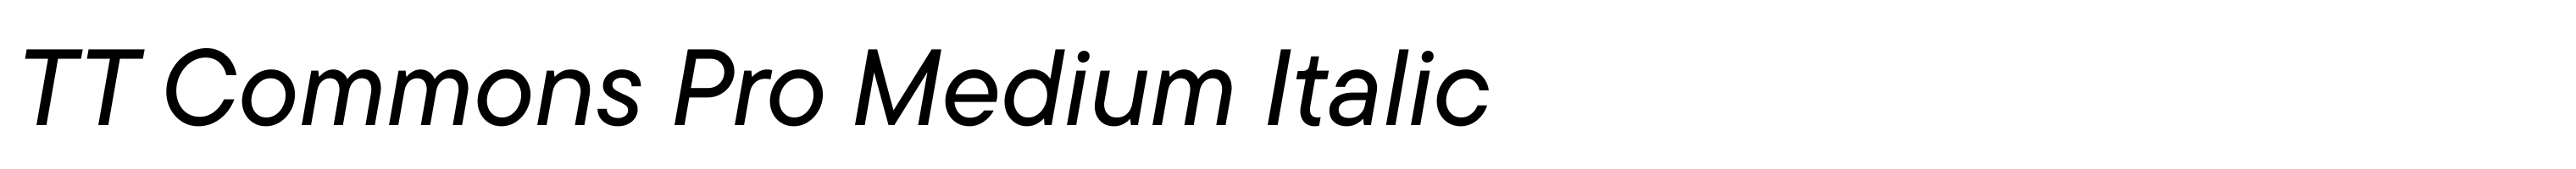 TT Commons Pro Medium Italic